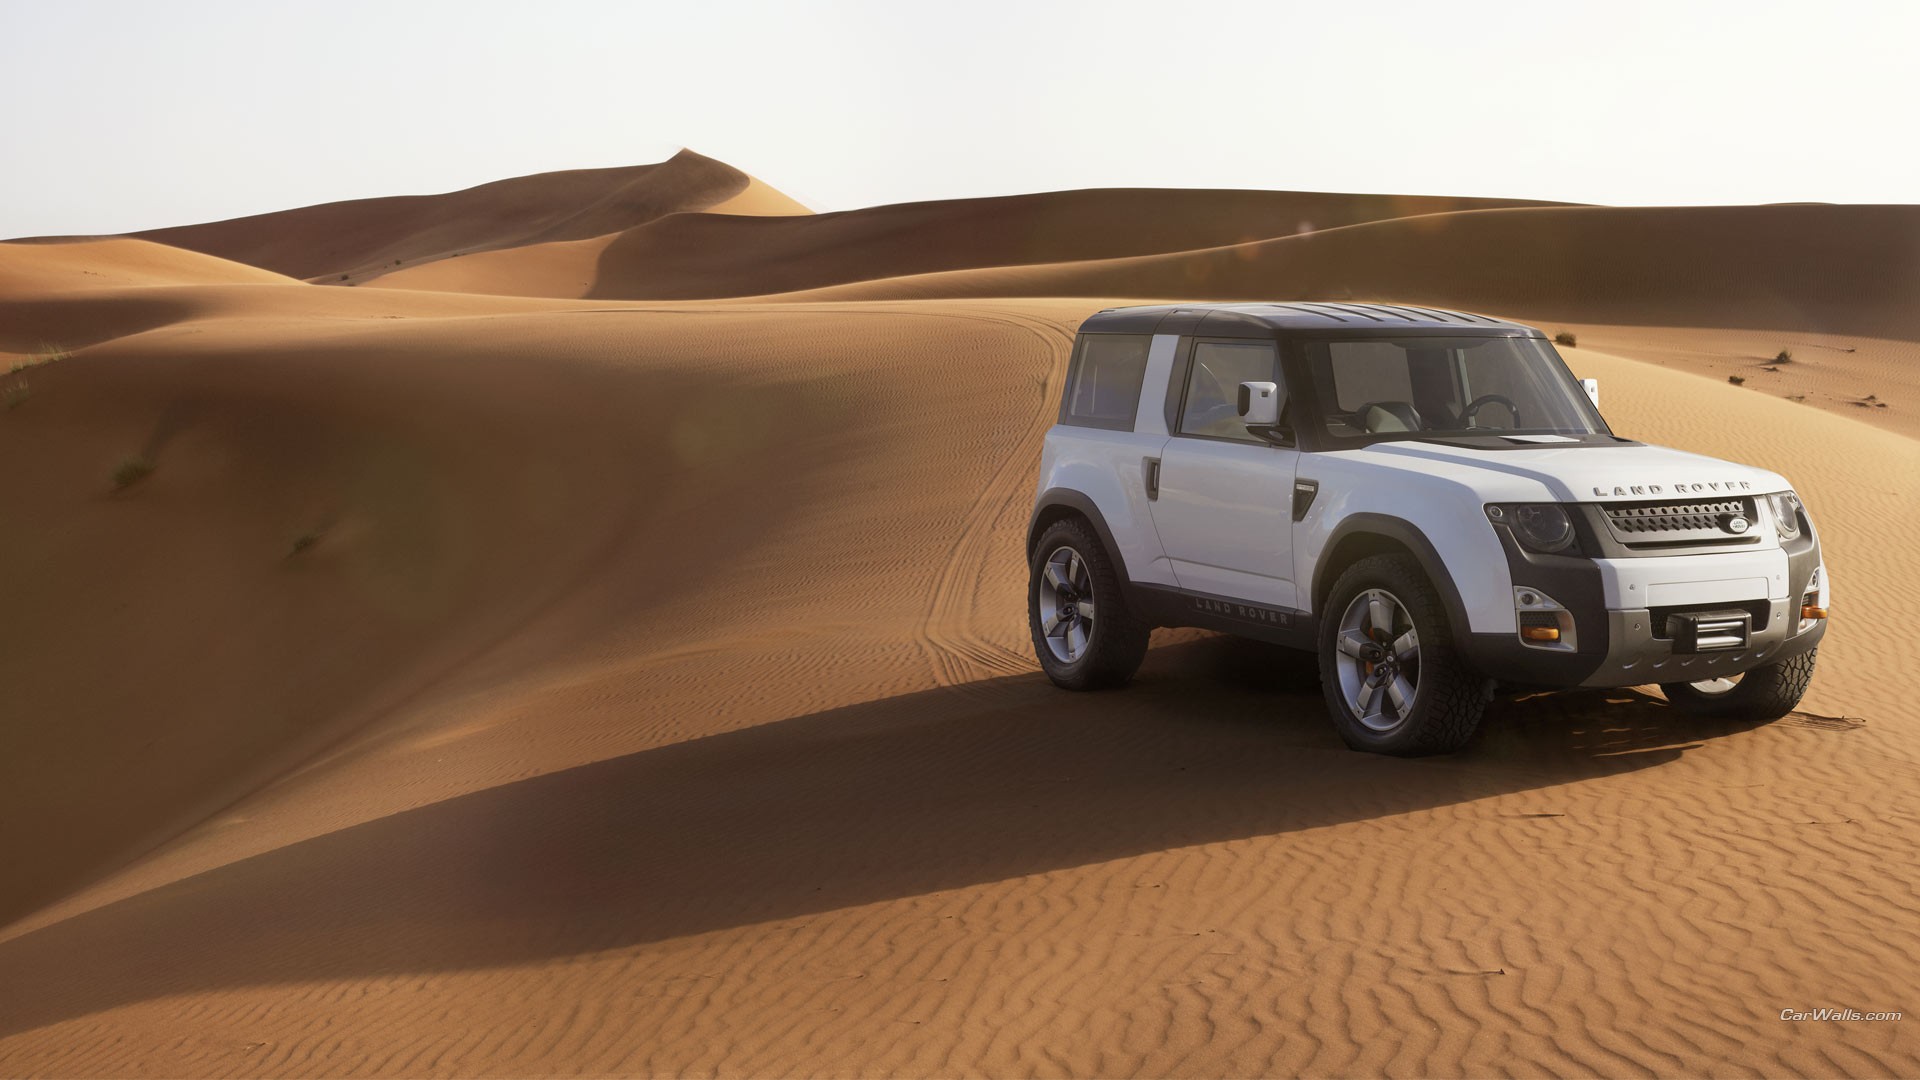 Land Rover DC100, Concept Cars, Desert, Dune, Sand Wallpaper